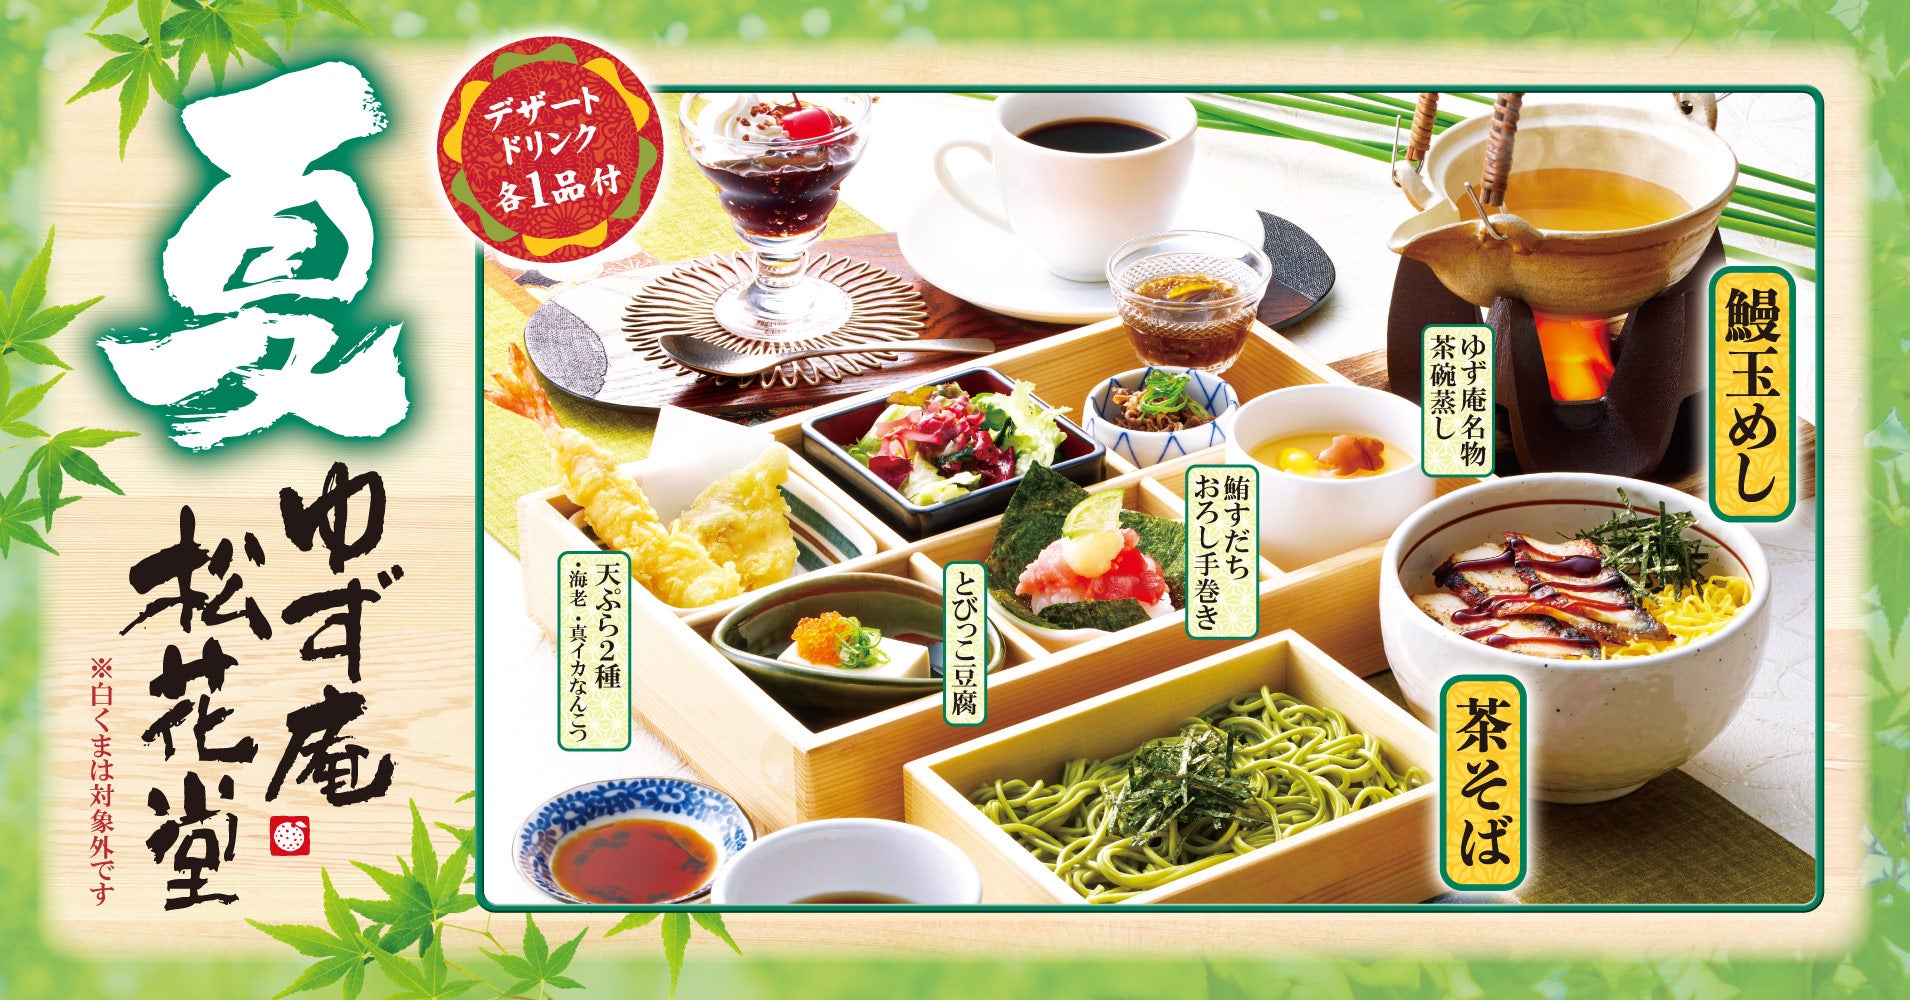 【横浜ロイヤルパークホテル】天空のレストランで“涼”を味わう夏季限定「涼麺ランチセット」販売